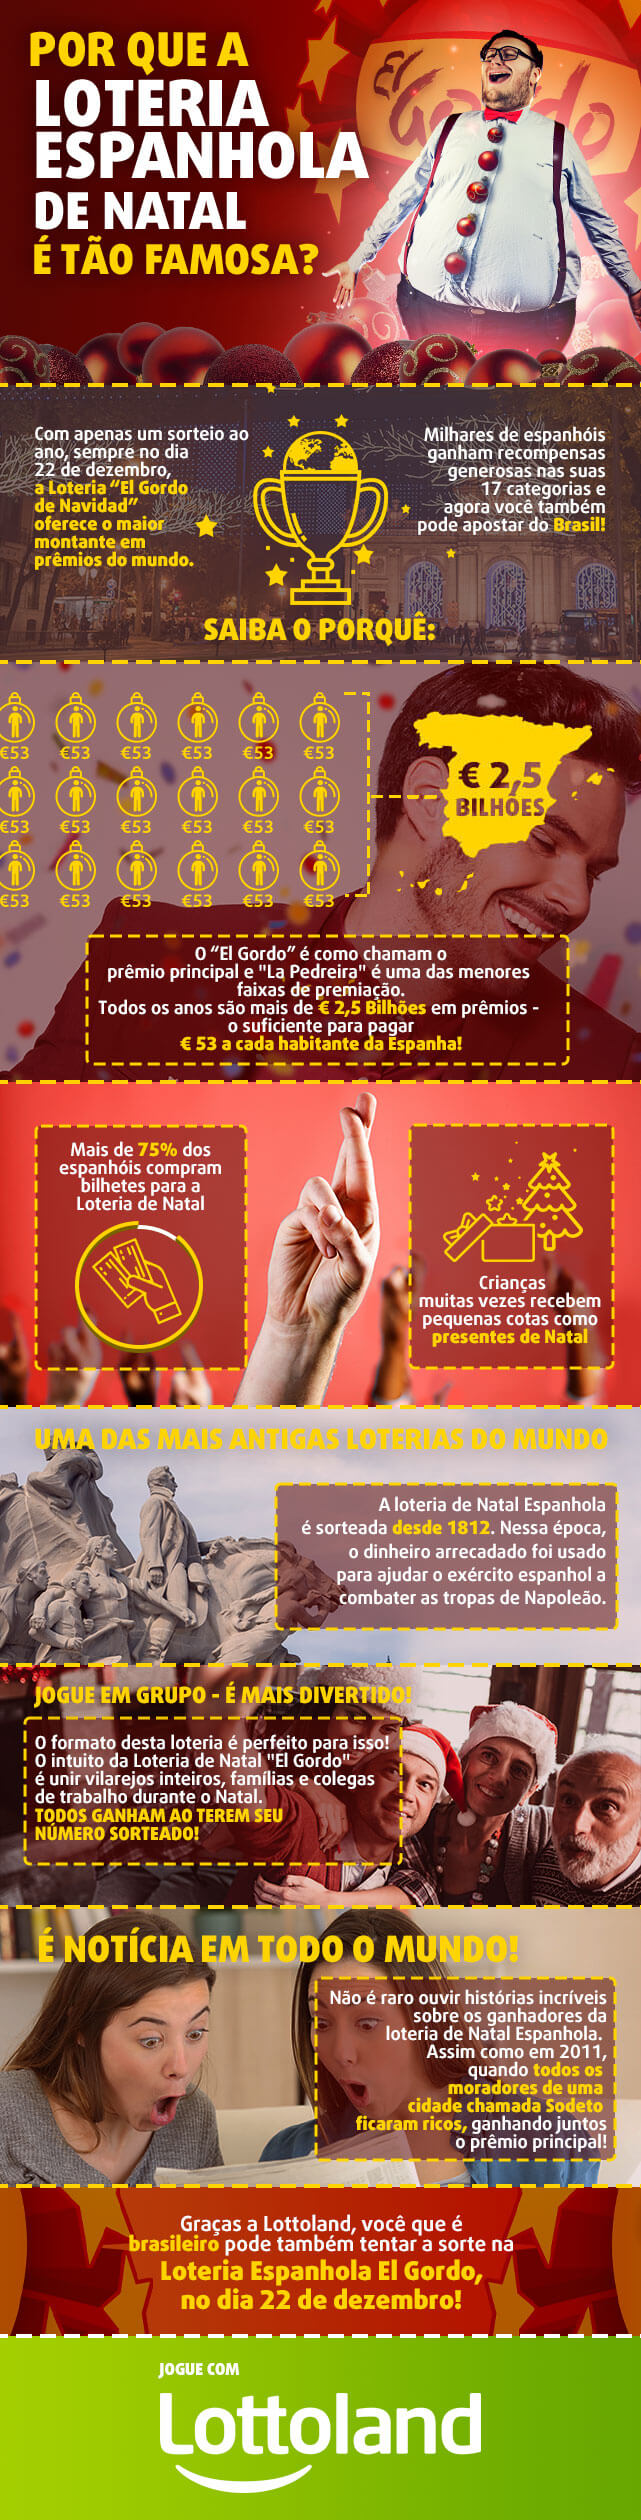 Infográfico com história, fatos, curiosidades e prêmios da Loteria espanhola El Gordo de Navidad